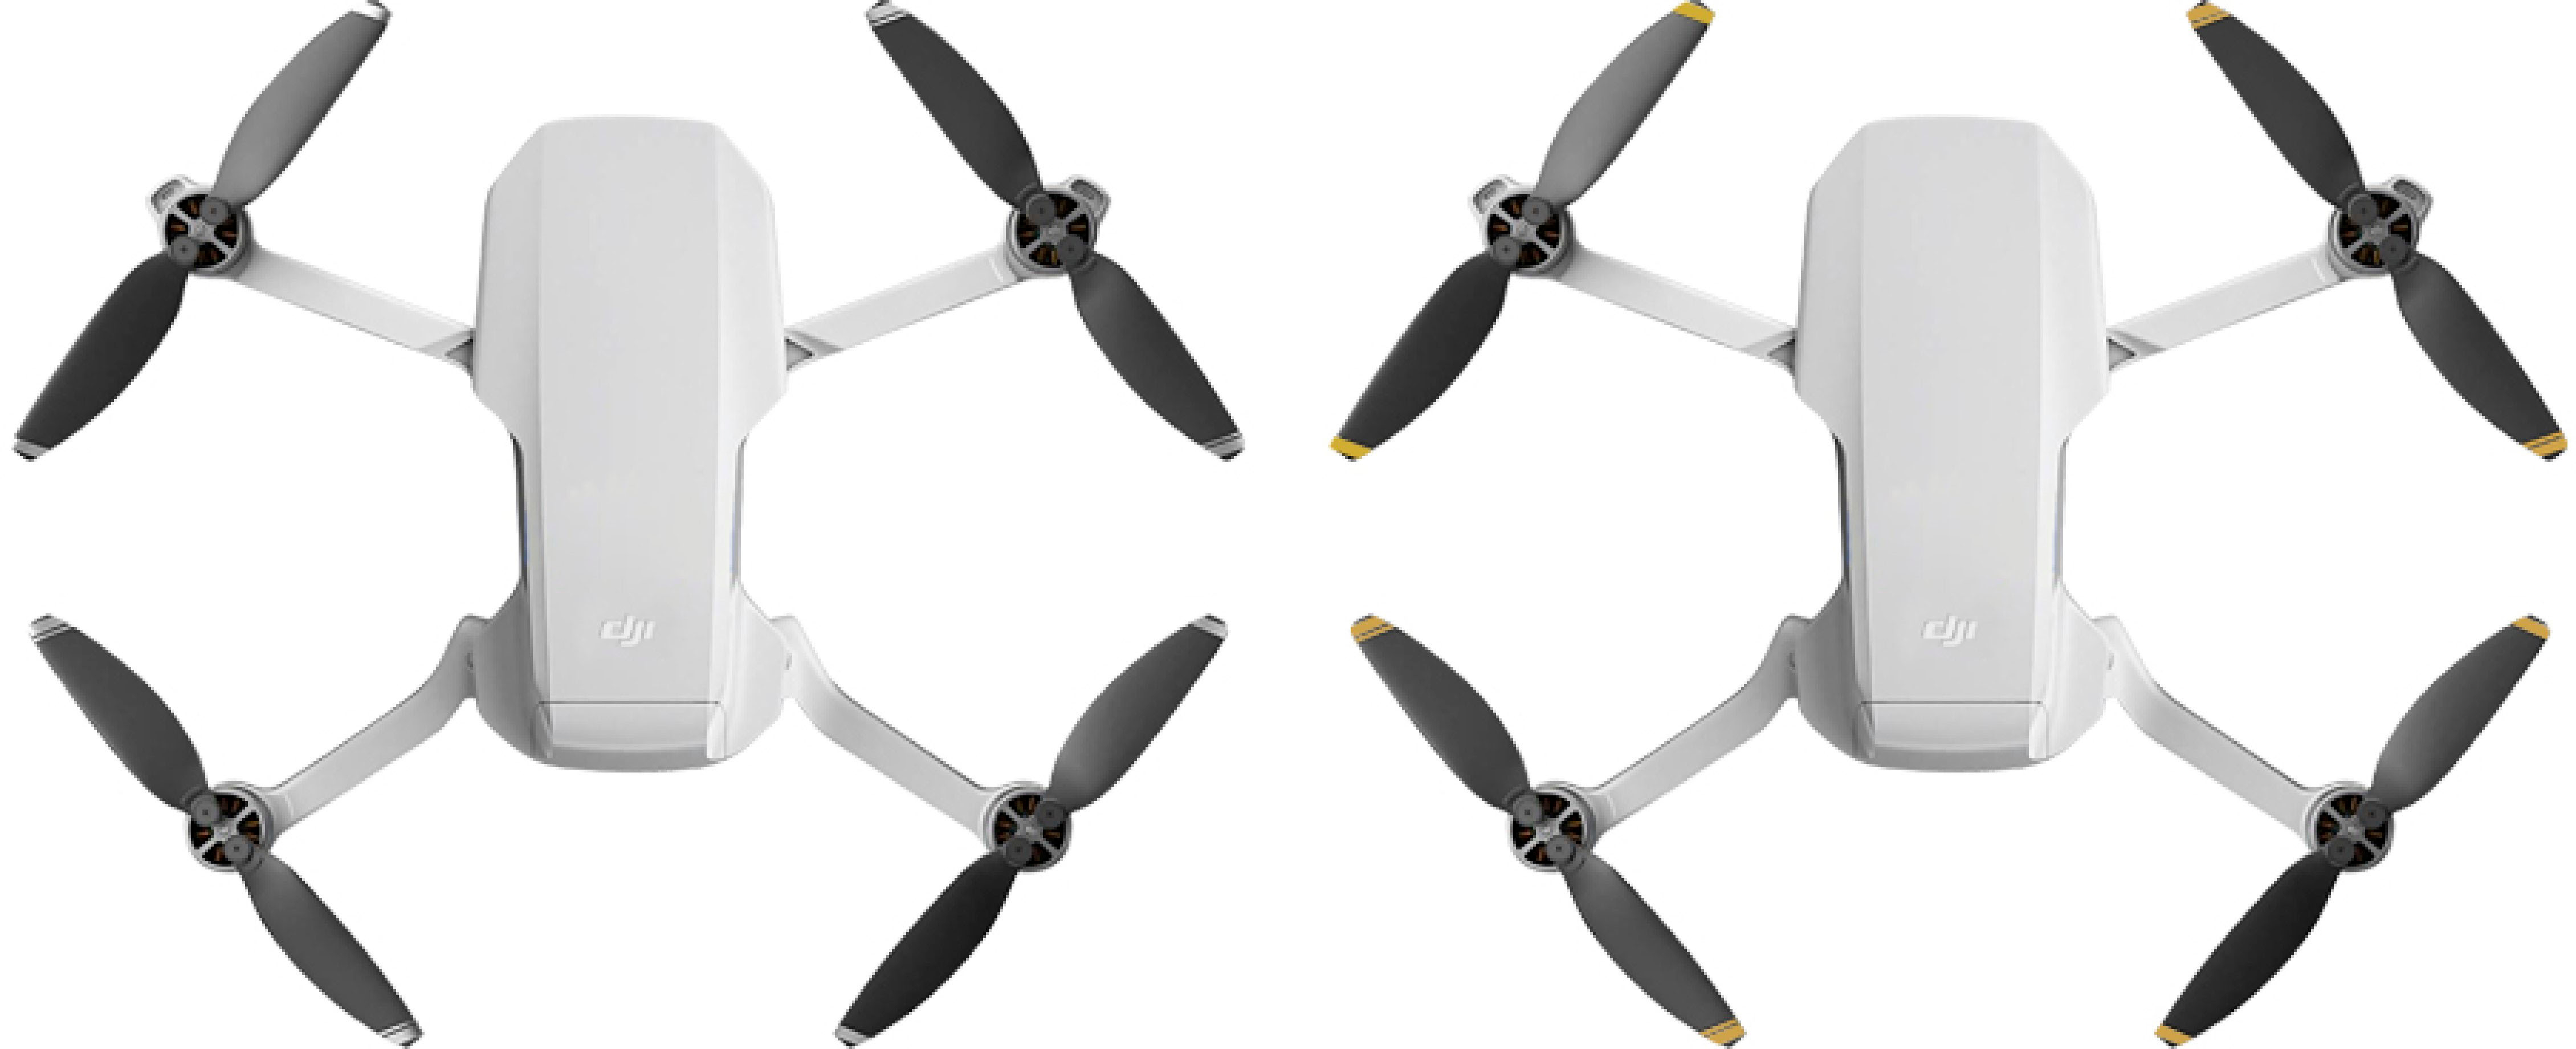 Angle View: Digipower - Foldable Propeller for DJI Mini 2 / Mini SE / Mini 2 SE (8-Count) - Black